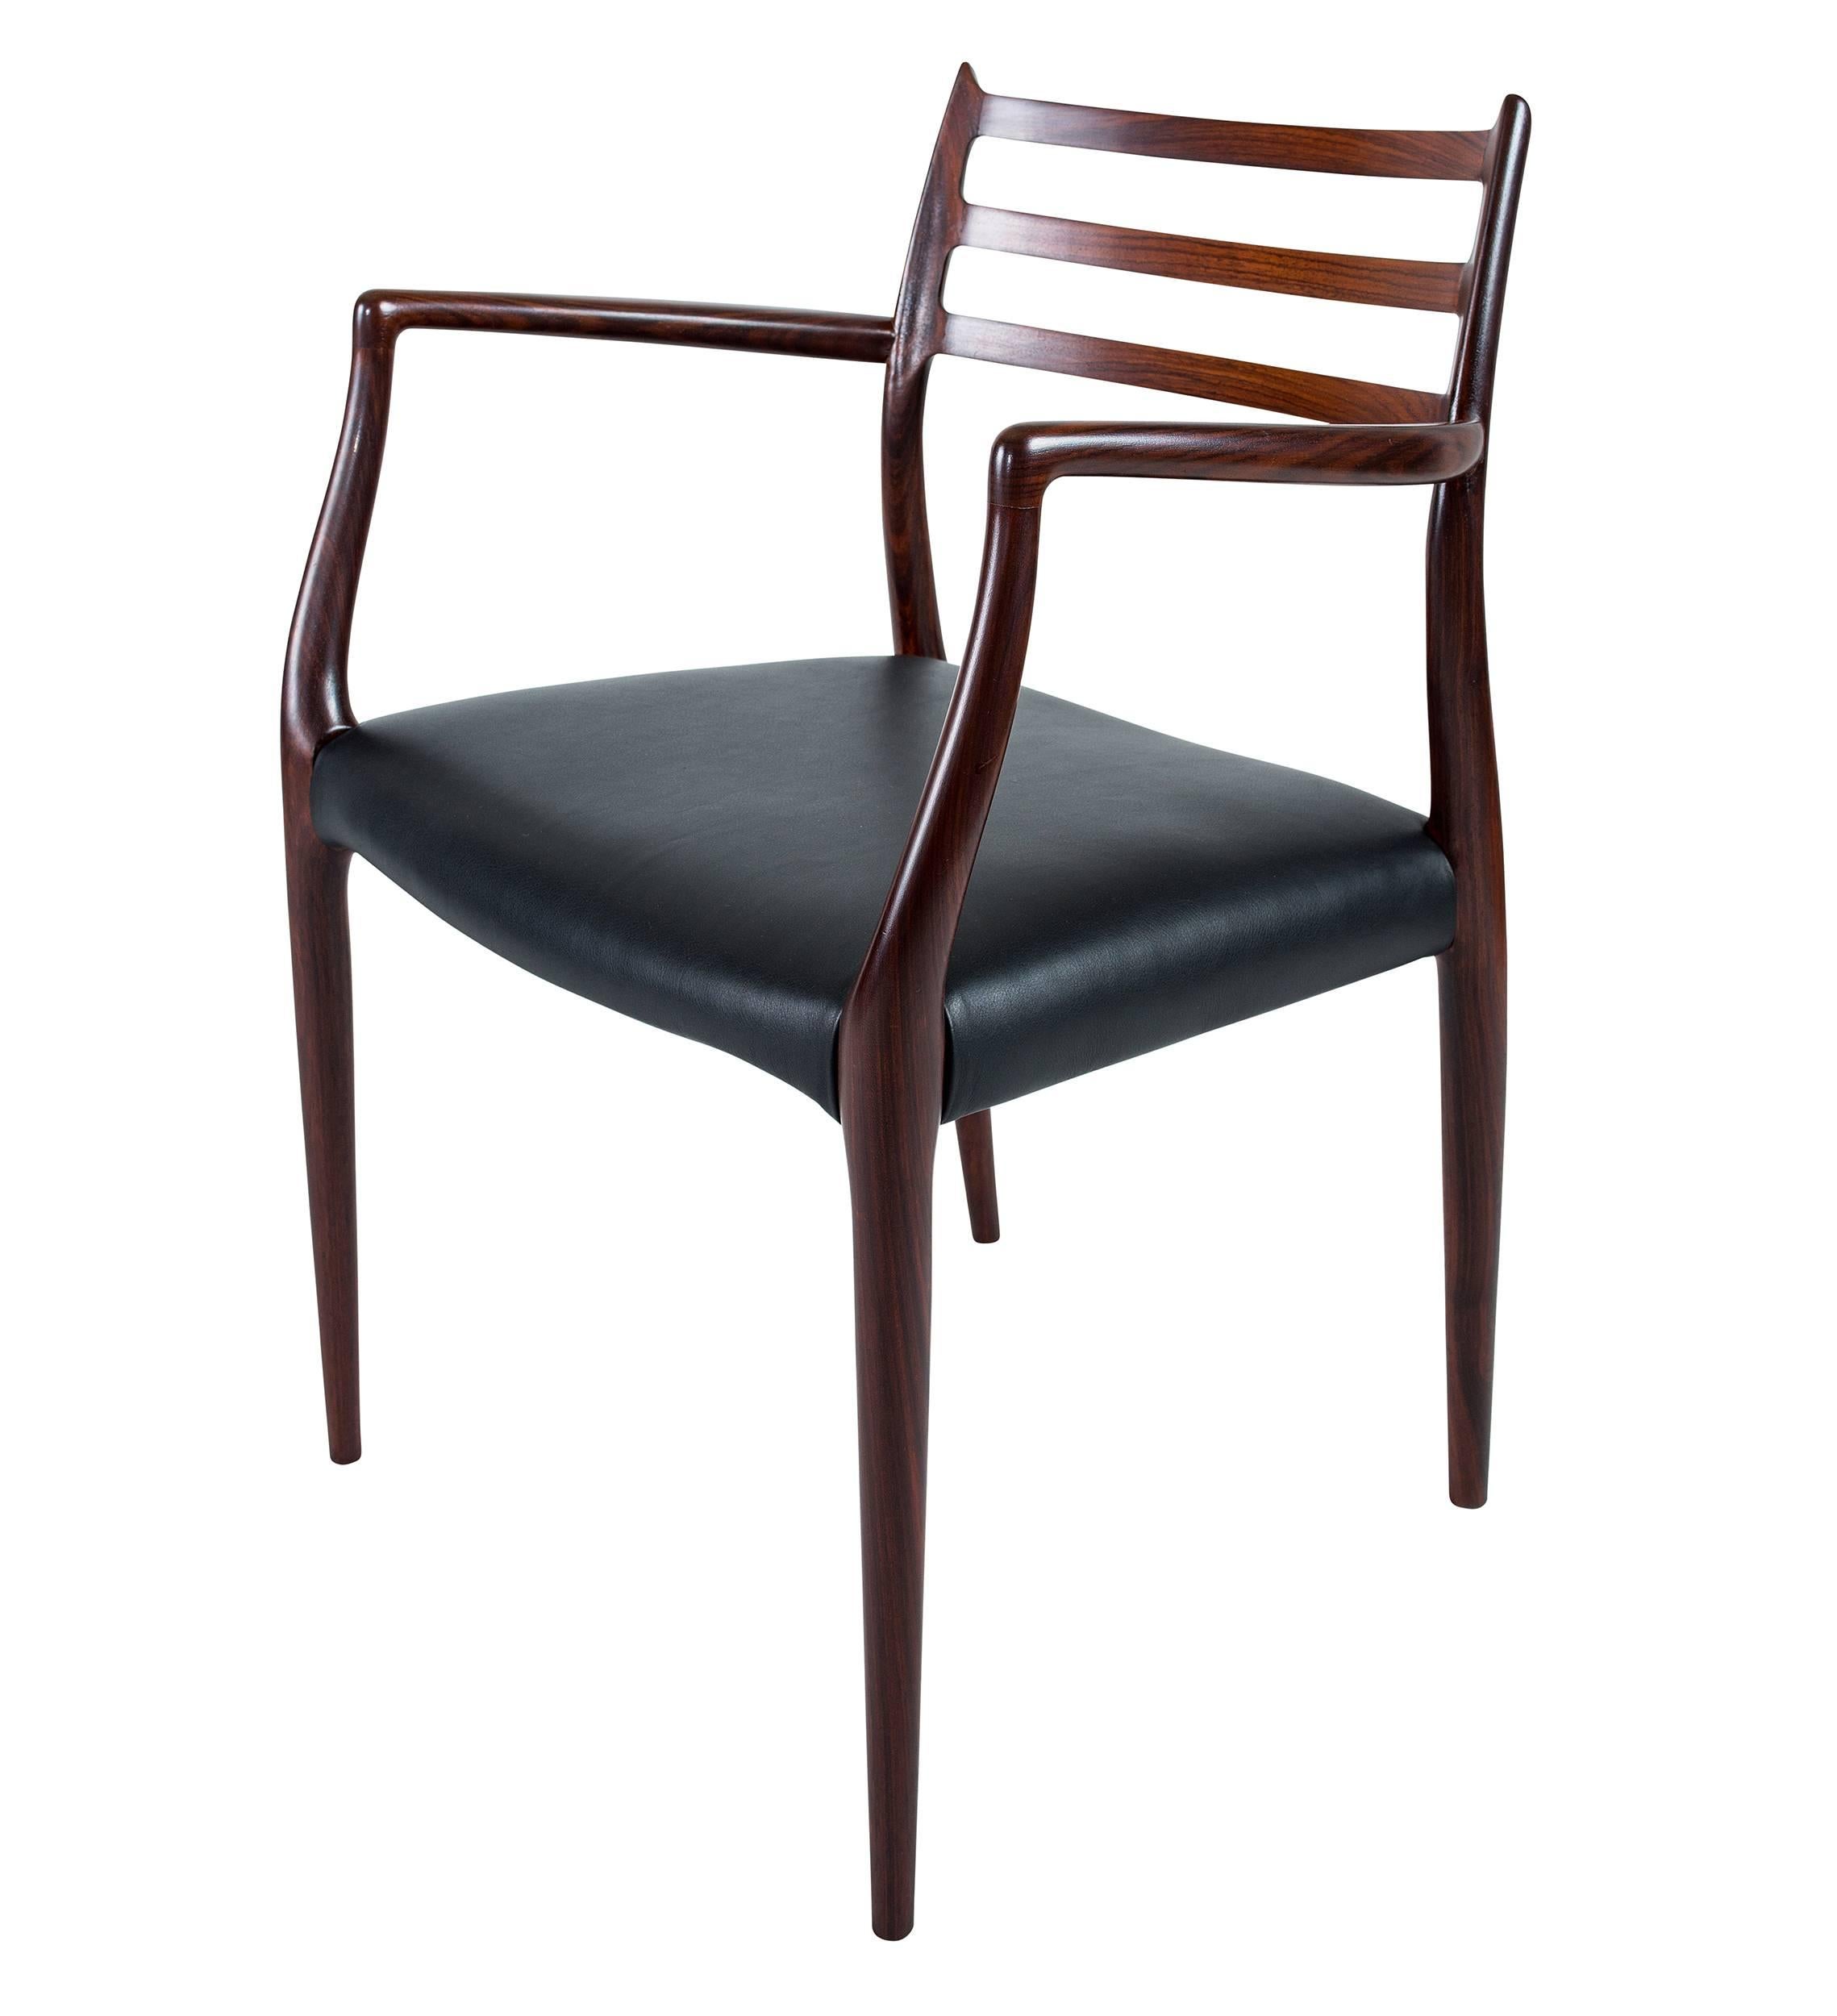 Paire de fauteuils Niels Moller en bois de rose modèle #62 conçus en 1962 et produits par J. L. Moller Mobelfabrik.